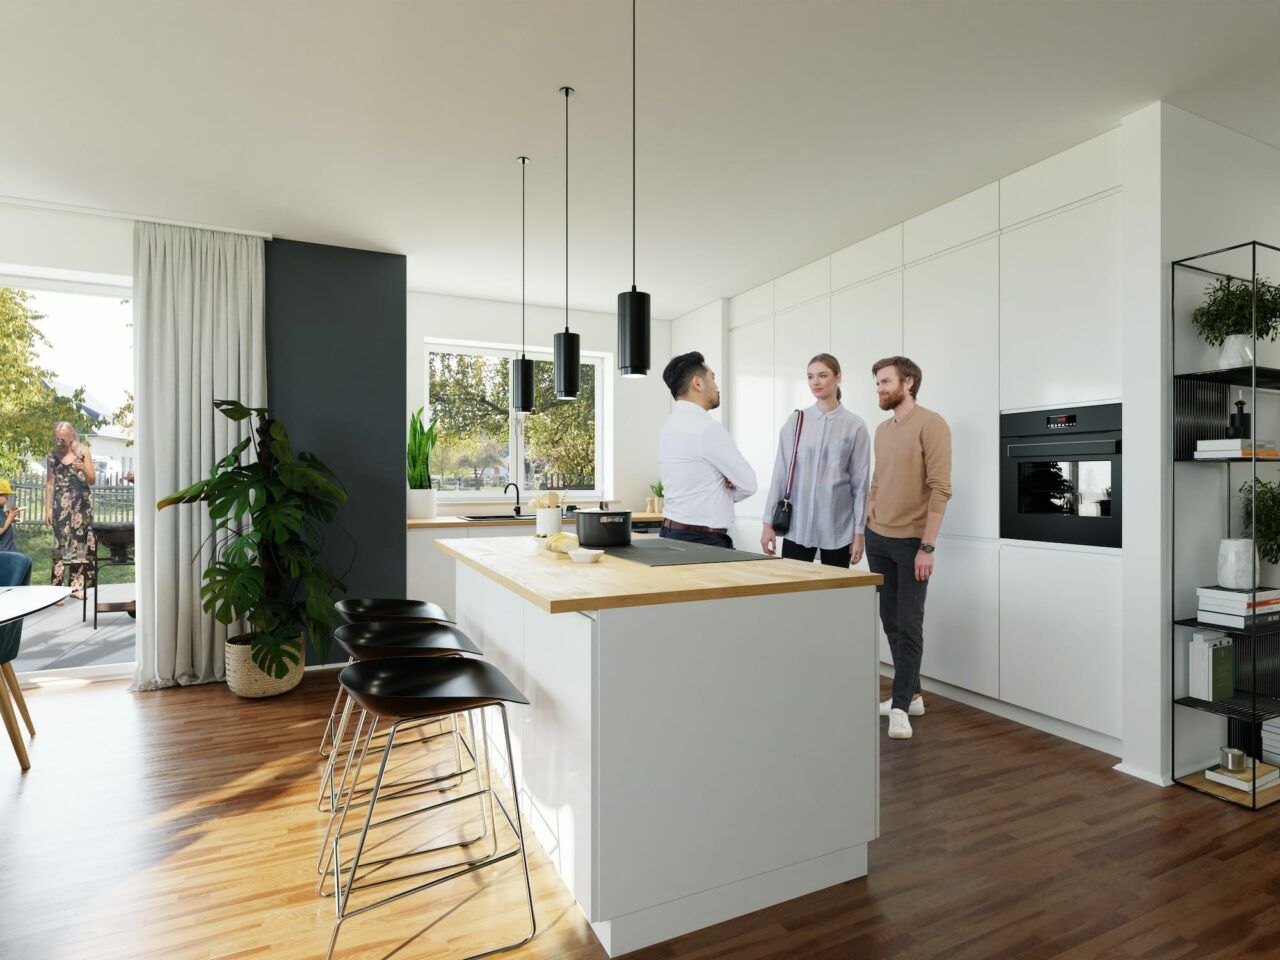 ALTE DORFSTRASSE CROSSEN - Energieeffiziente Einfamilienhäuser in ländlicher Naturidylle - Küche